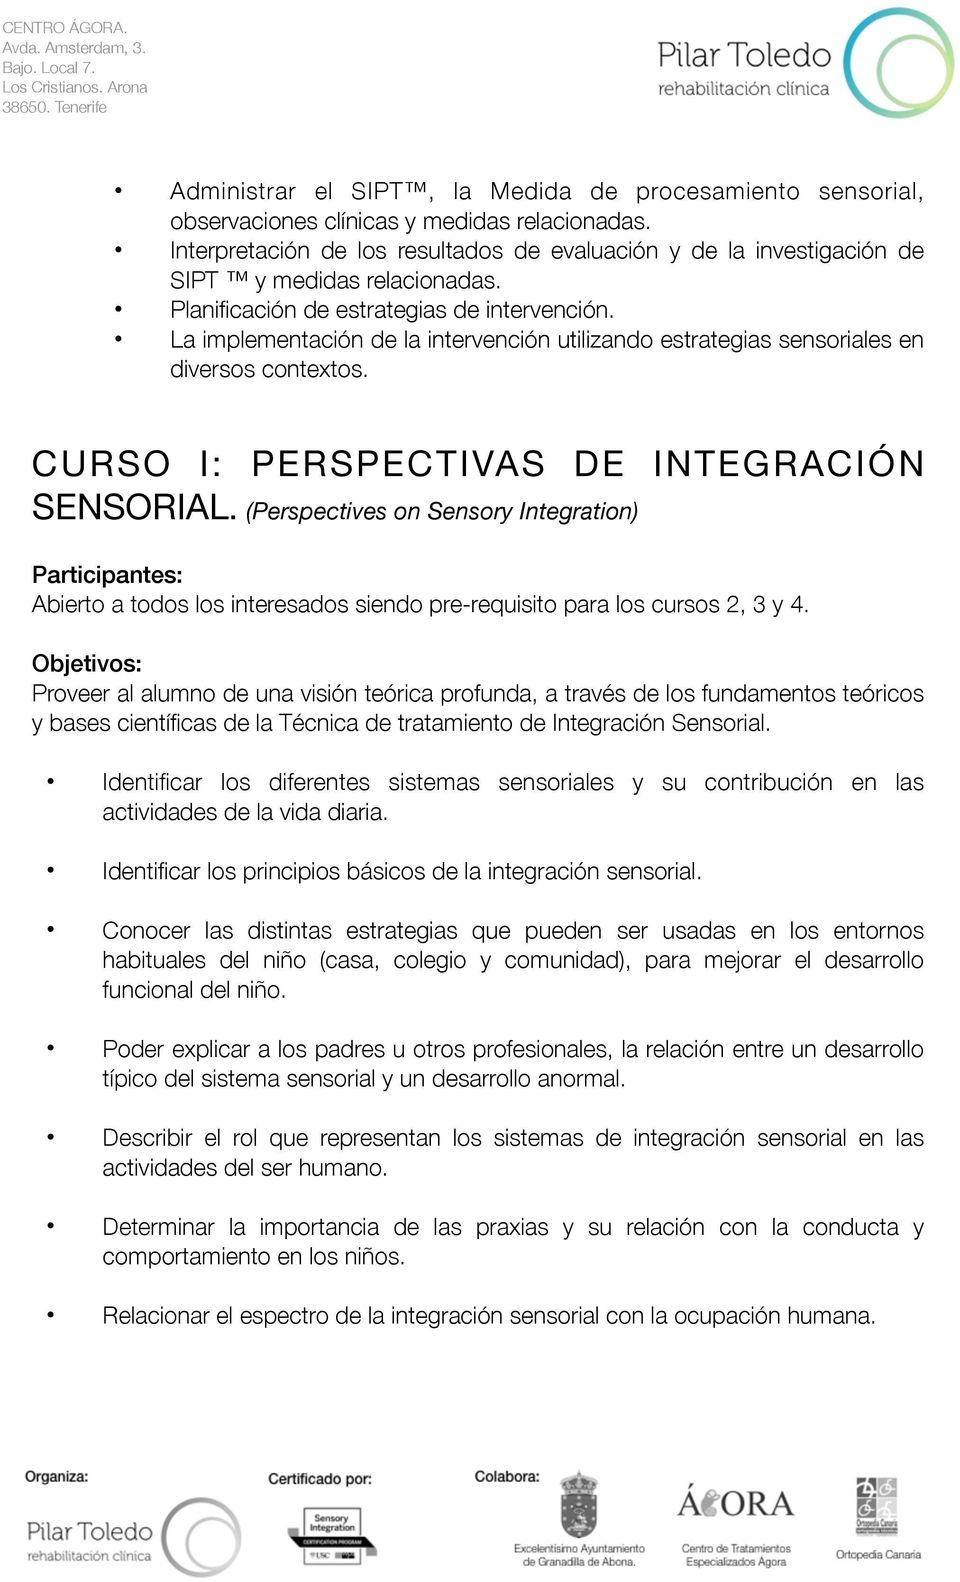 La implementación de la intervención utilizando estrategias sensoriales en diversos contextos. CURSO I: PERSPECTIVAS DE INTEGRACIÓN SENSORIAL.